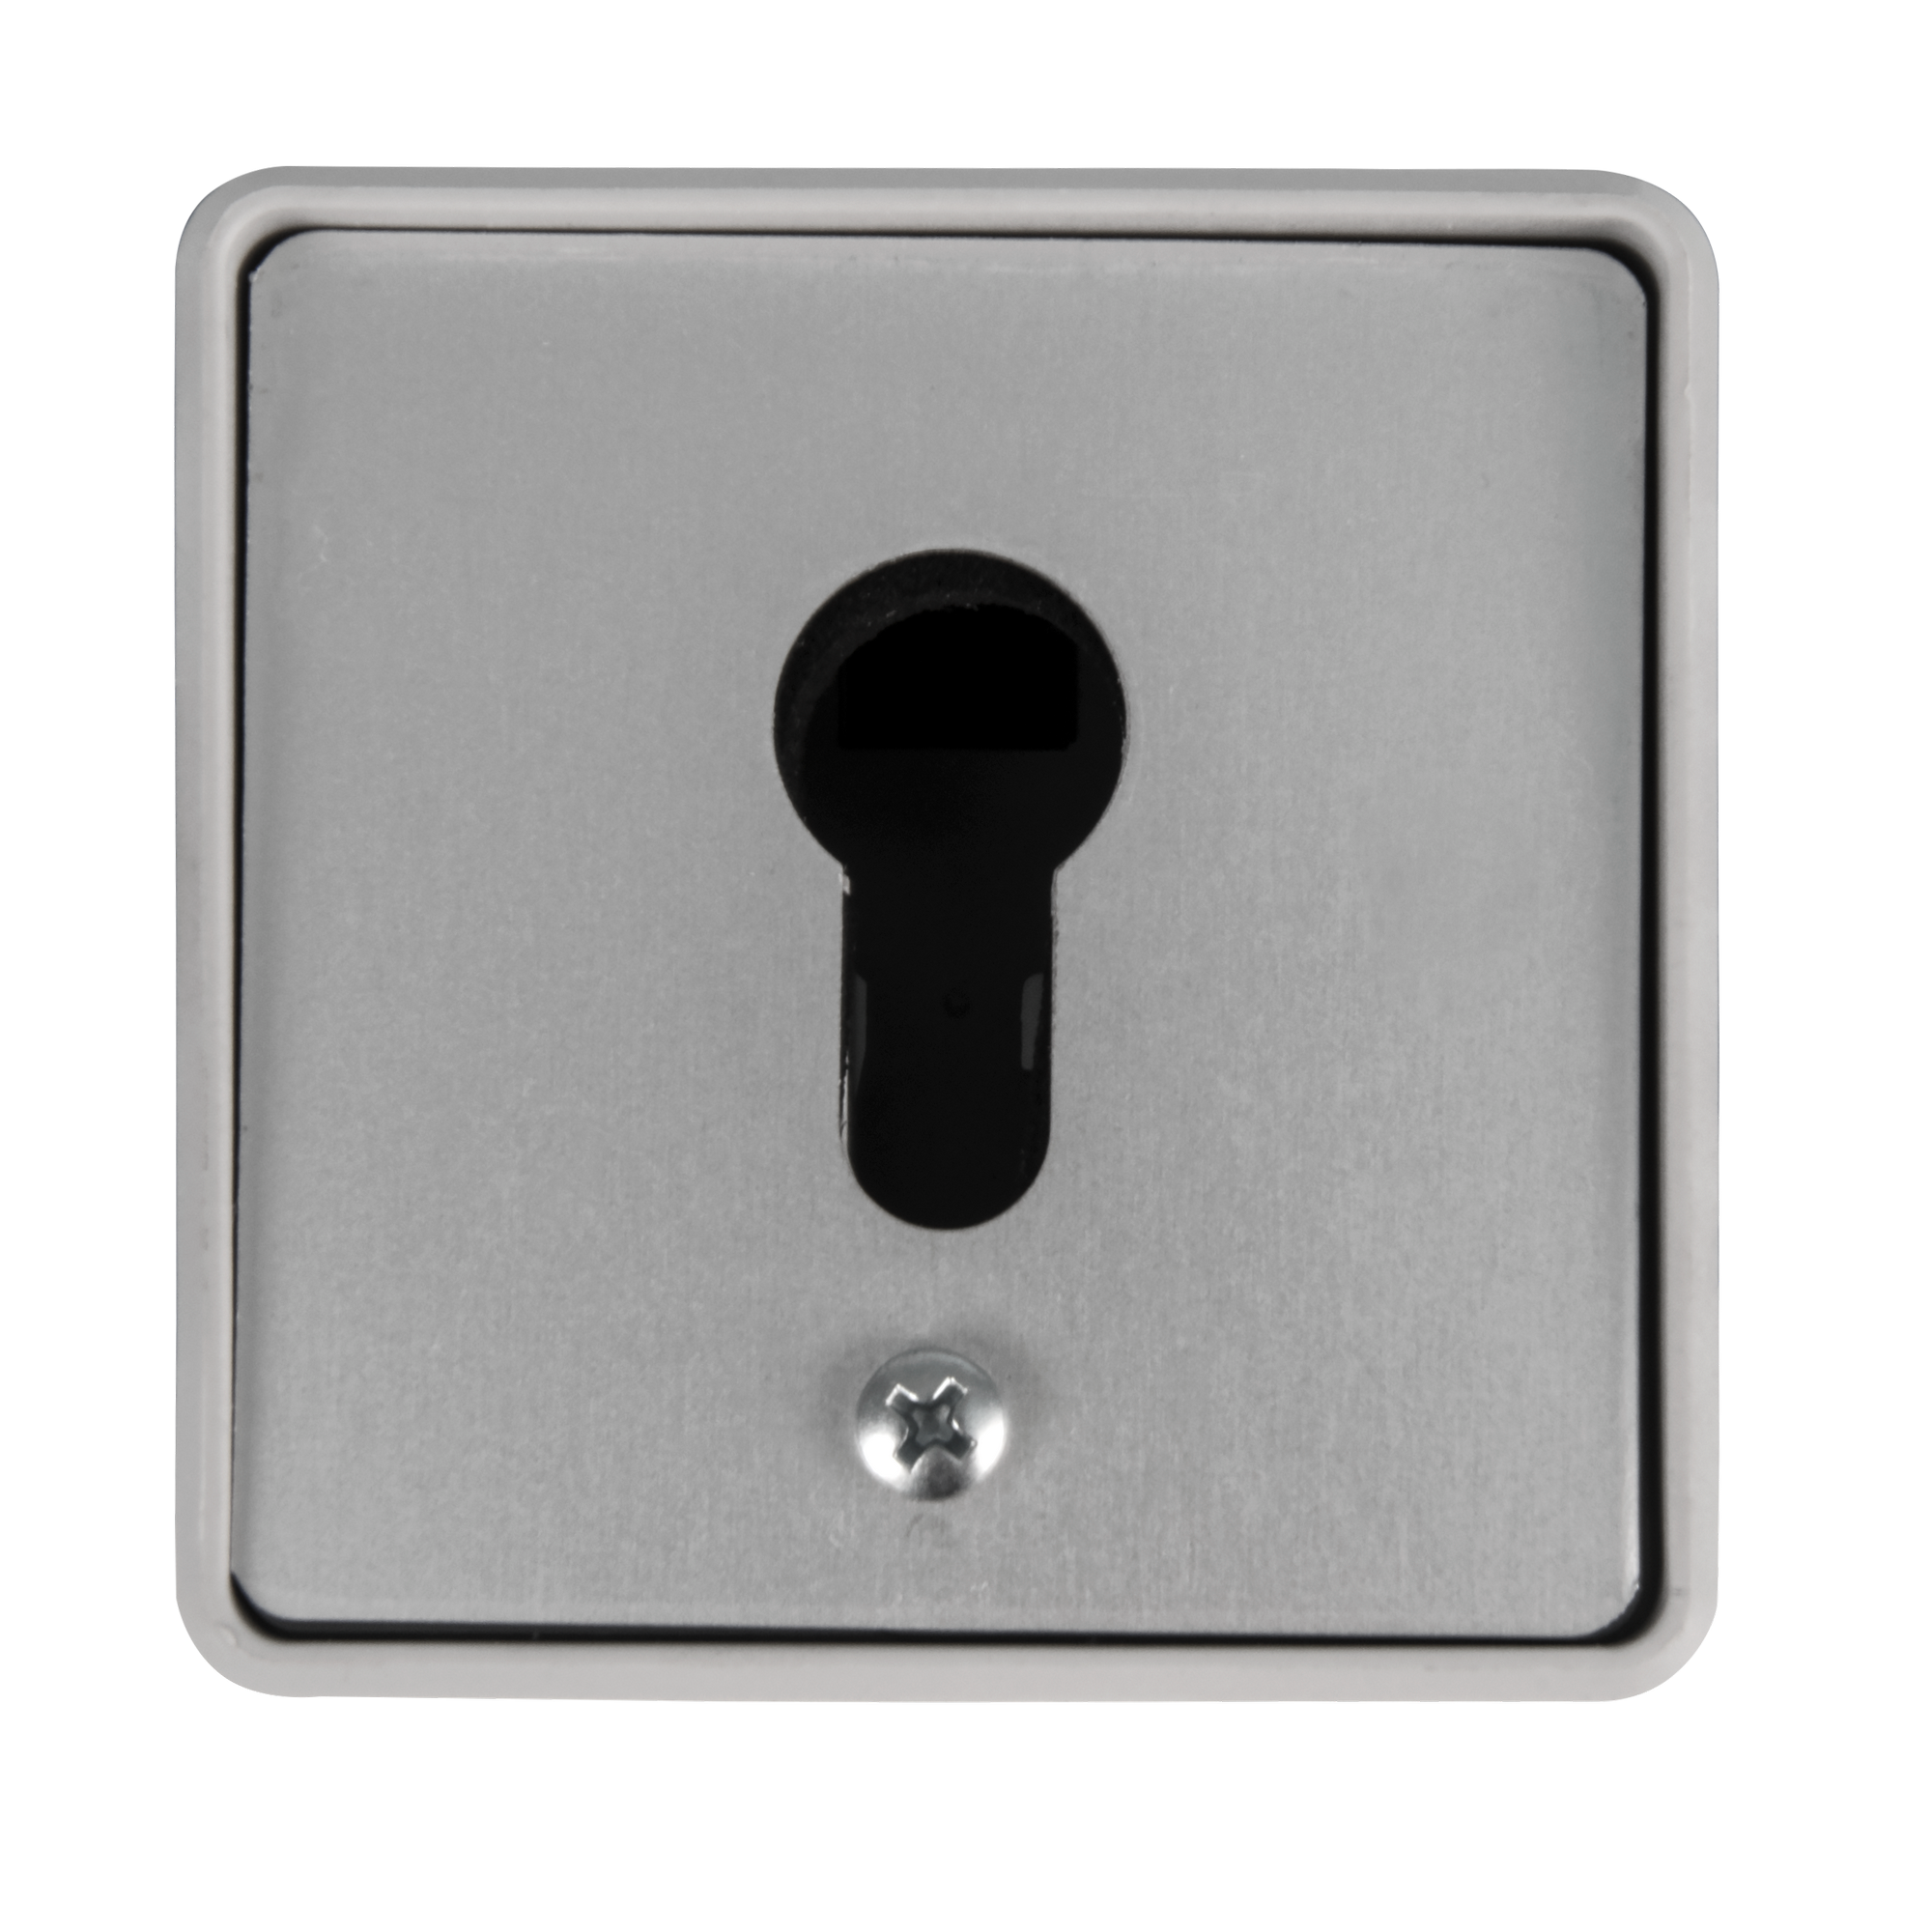 Schlüsselschalter-Aufputz für 'Mosaik' 8 x 8 cm + product picture